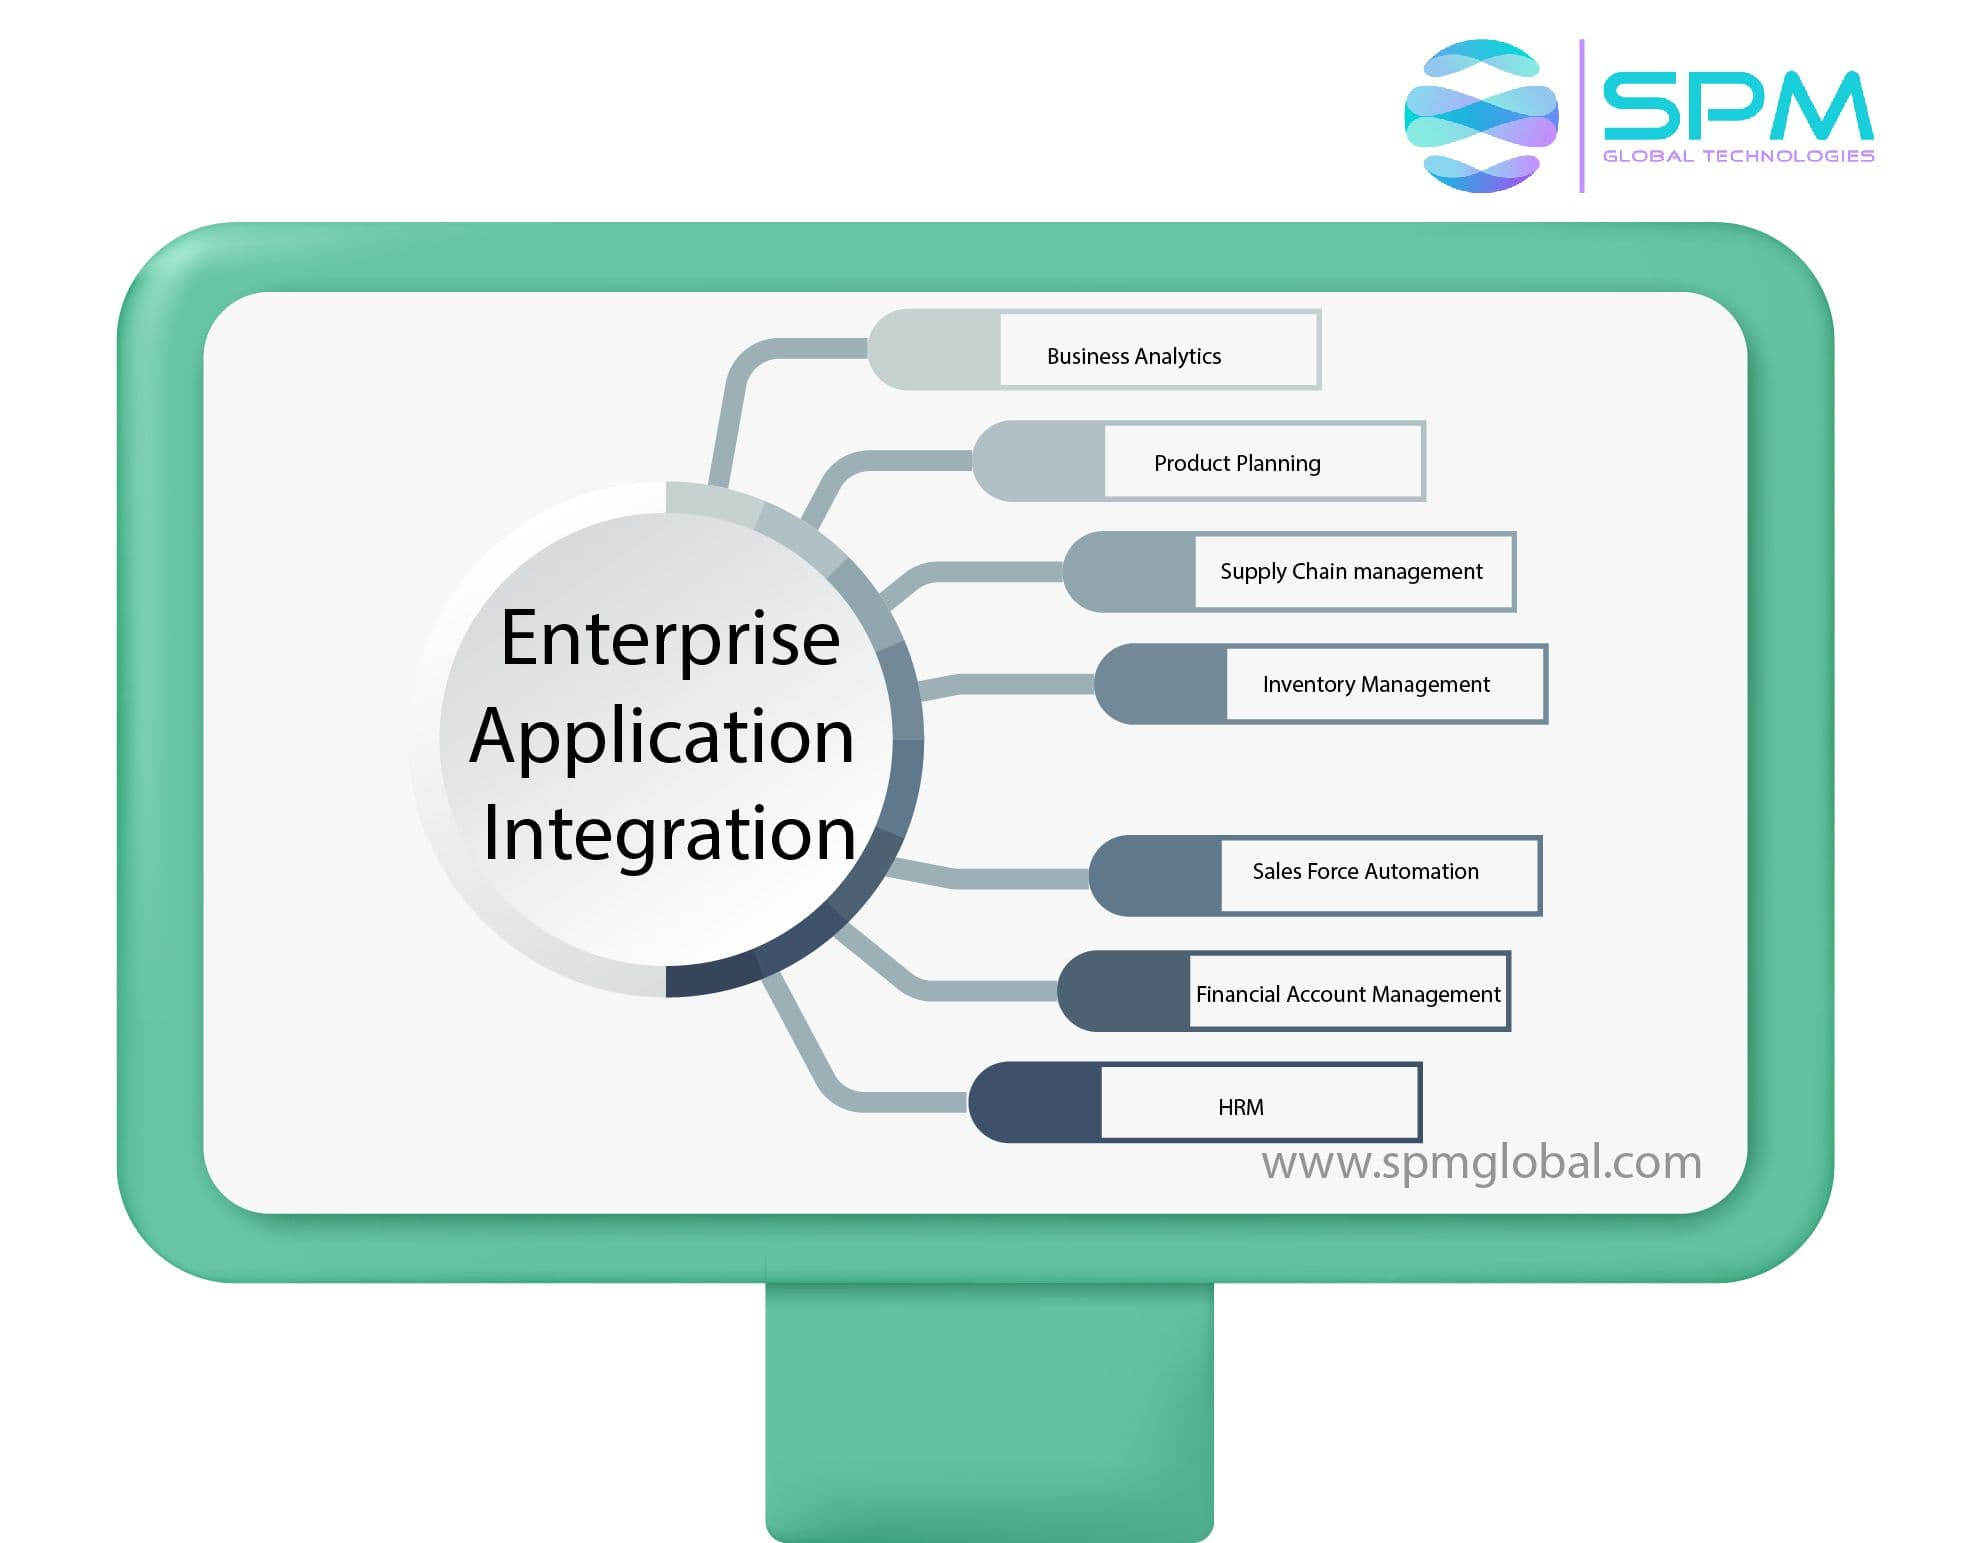 Enterprise Apps